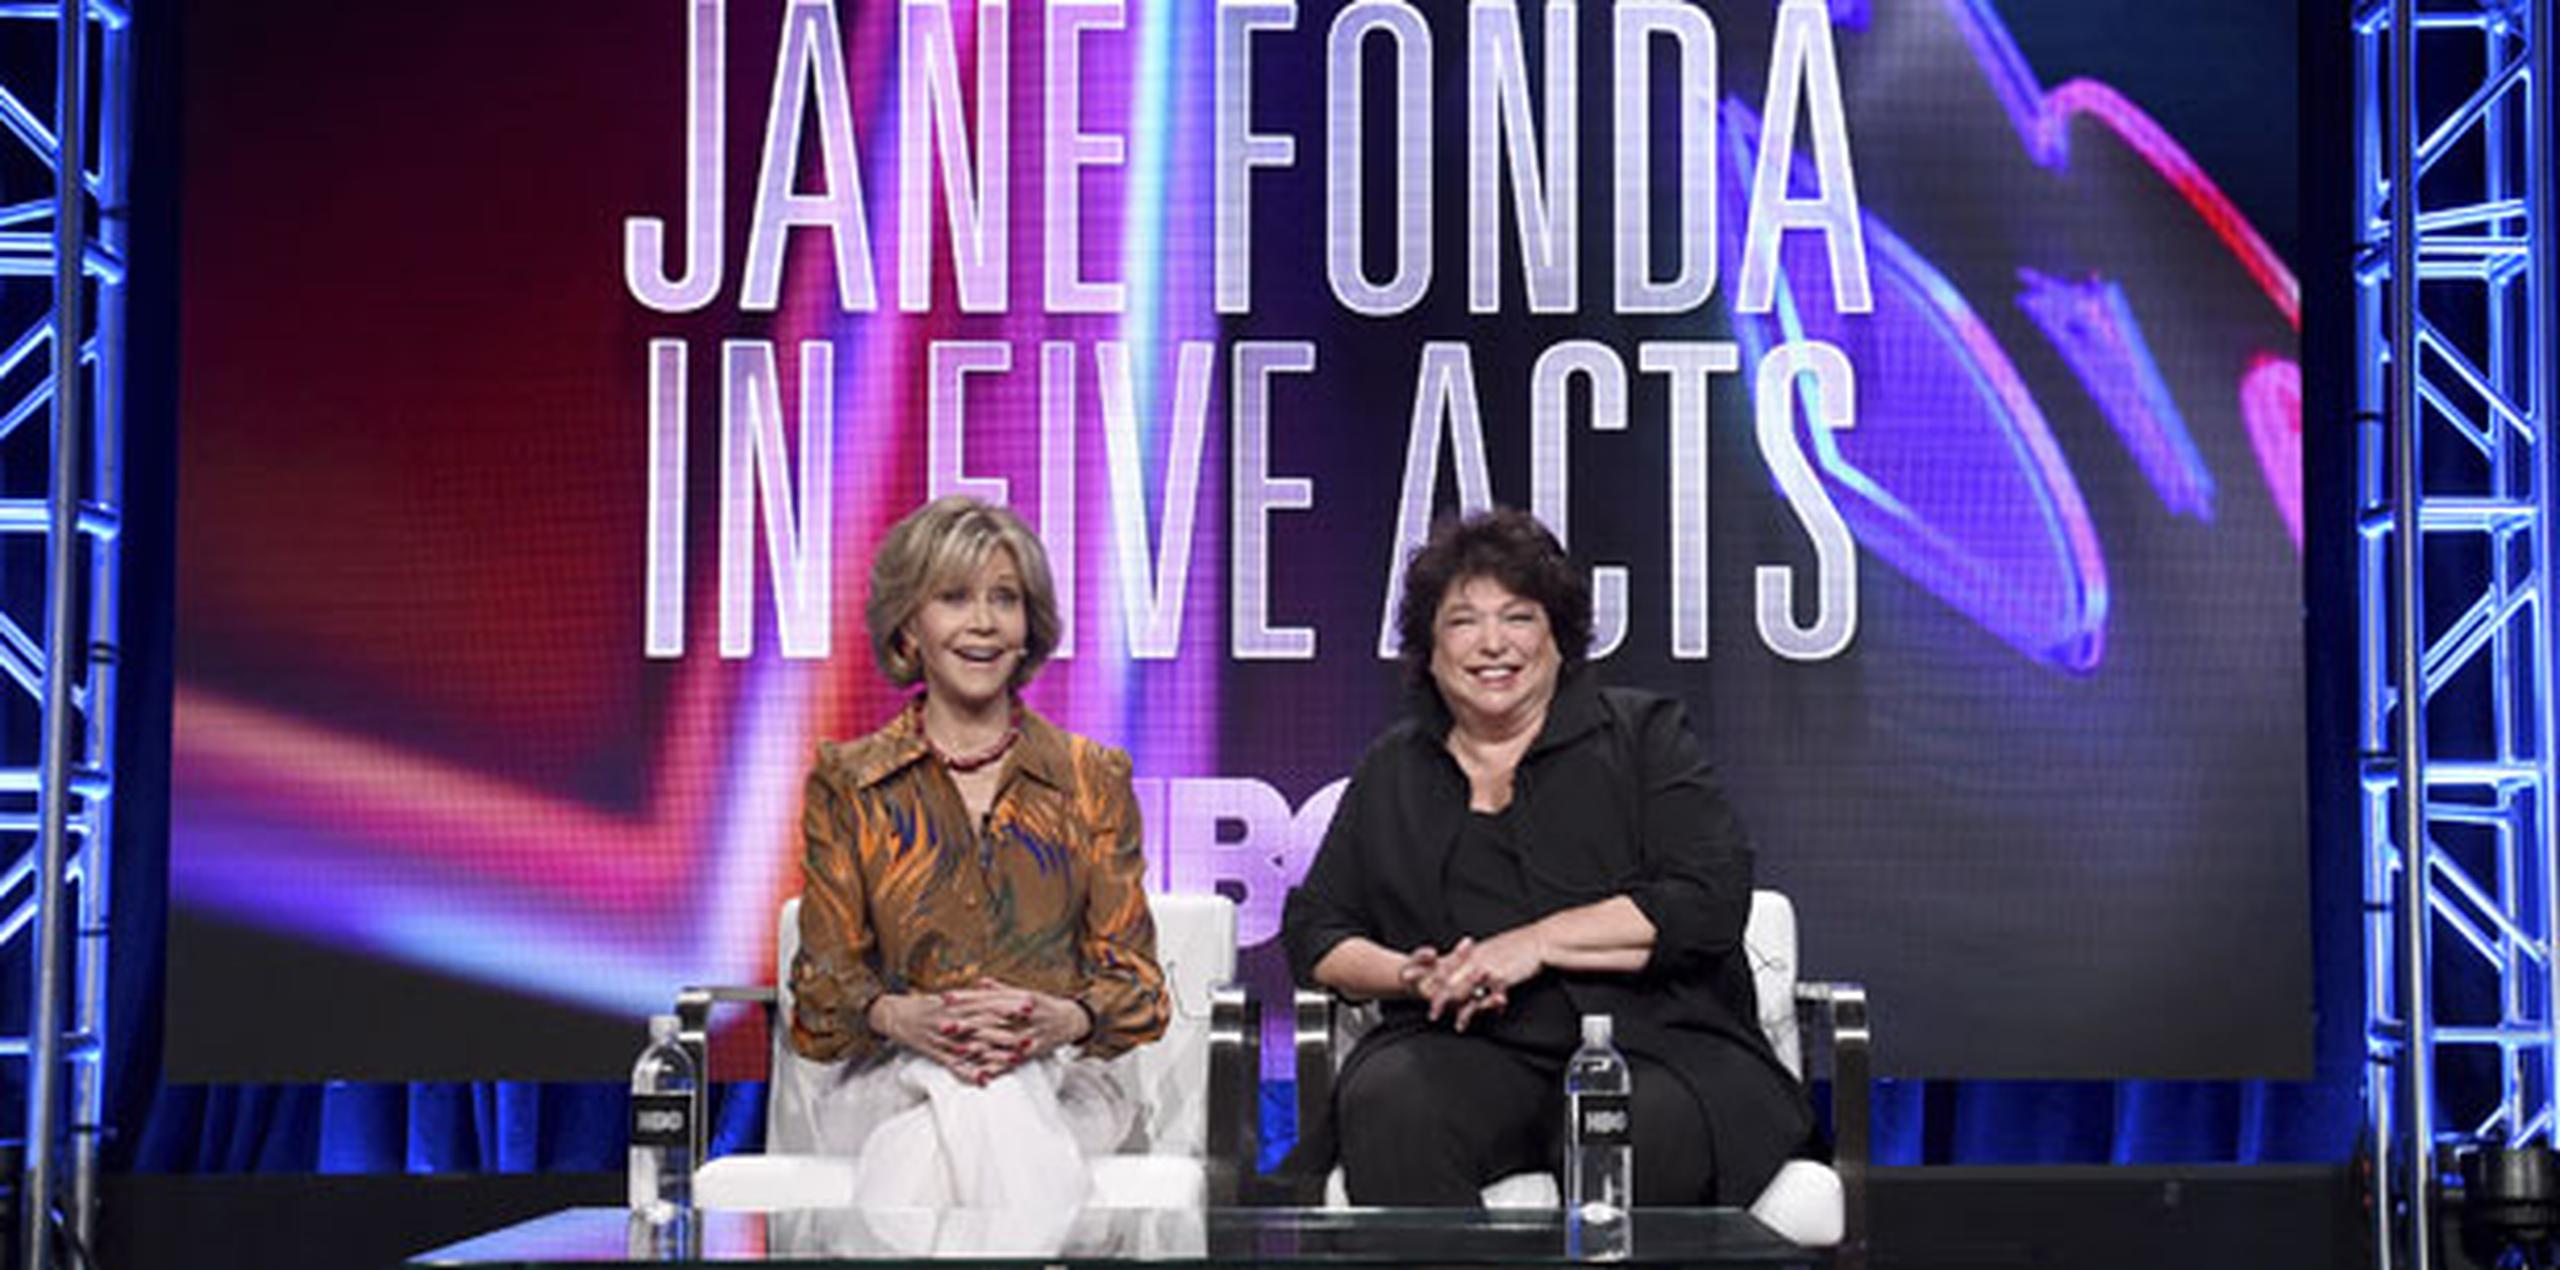 Fonda continúa trabajando: protagoniza con Lily Tomlin la serie de Netflix "Grace and Frankie" y aparecerá con Tomlin y Dolly Parton en una secuela de su exitosa película de 1980 "9 to 5" (“Cómo eliminar a su jefe”).  (AP)